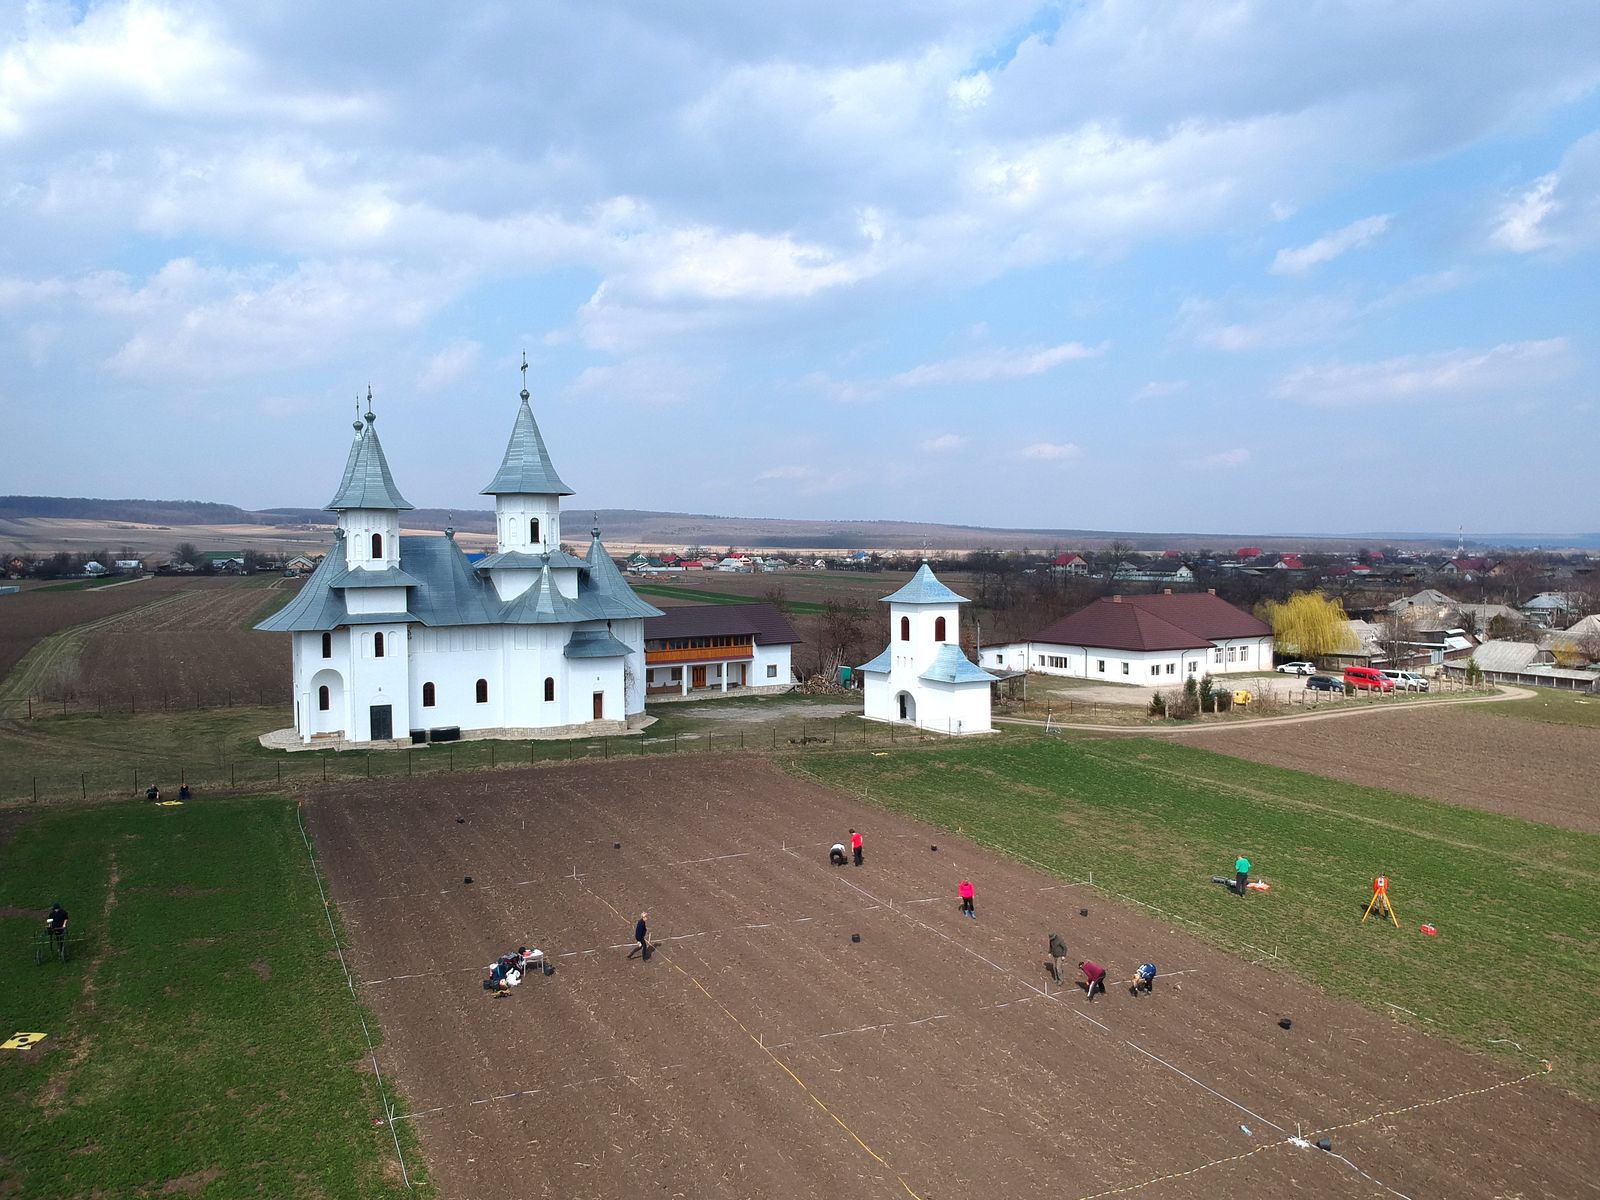 Petricani: Das Raster der Feldbegehung spannt sich um die im Fundplatzareal neu gebaute Kirche.